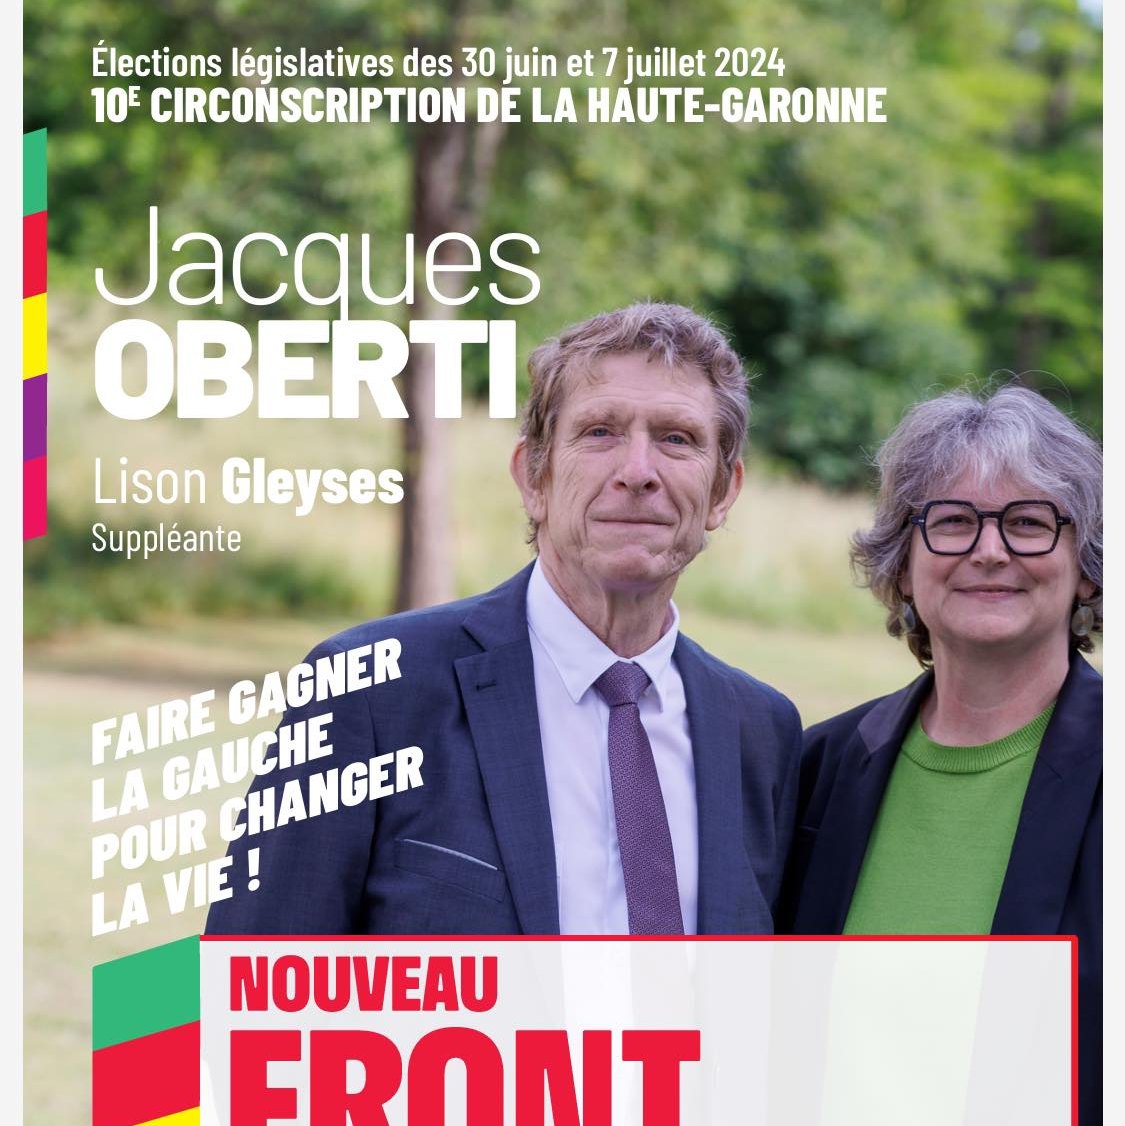 Jacques OBERTI candidat pour le Nouveau Front Populaire, 10ème circonscription de la Haute-Garonne, Élections législatives 2024